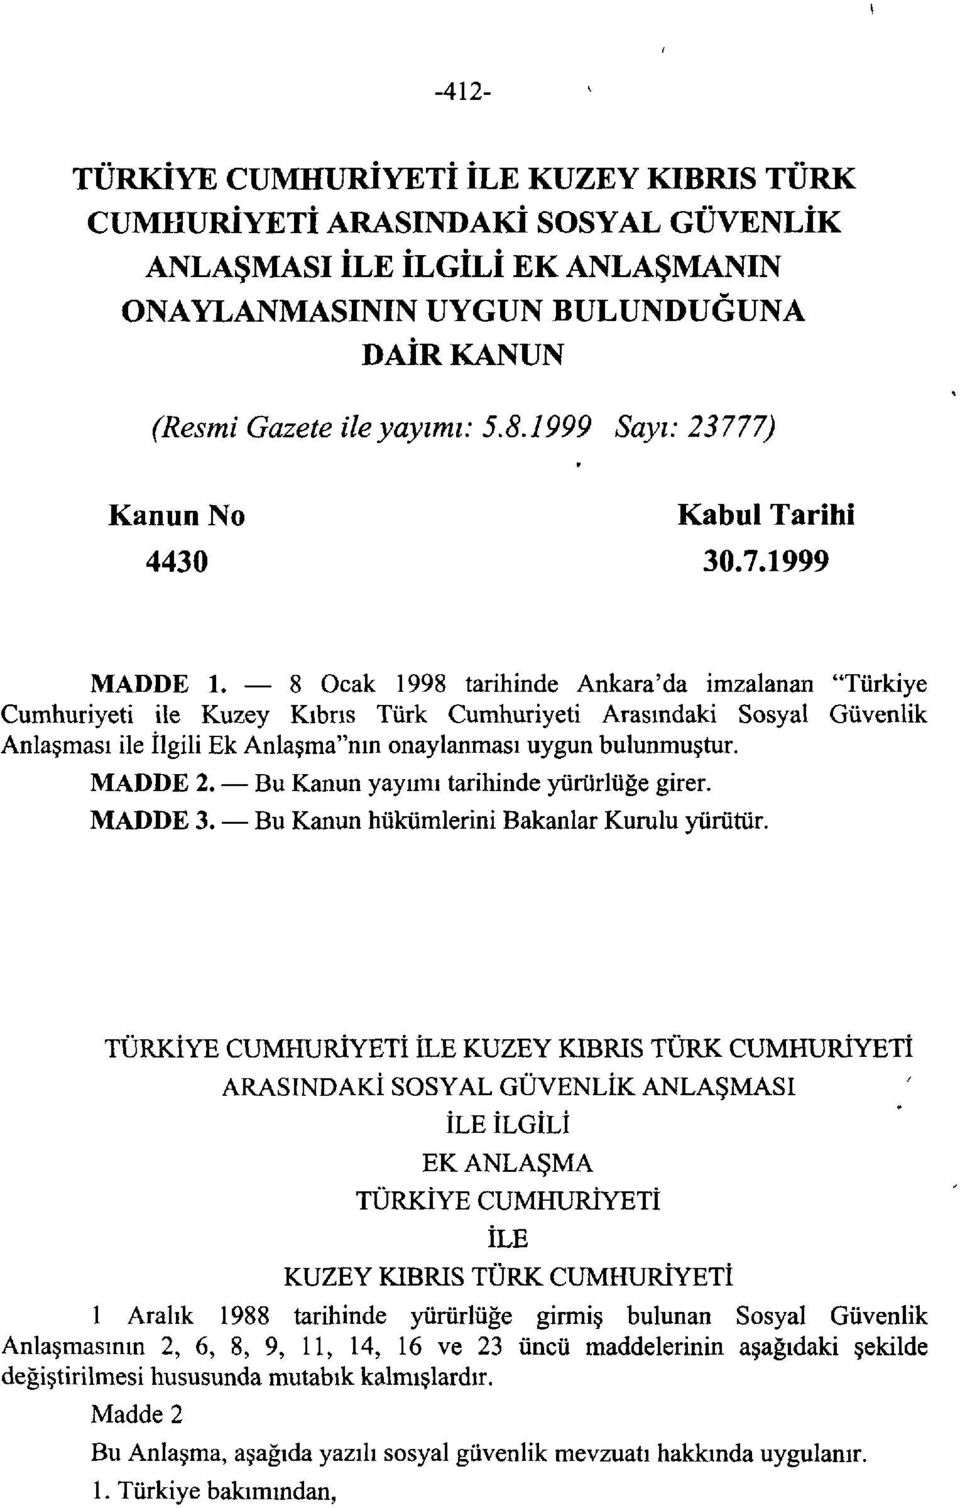 8 Ocak 1998 tarihinde Ankara'da imzalanan "Türkiye Cumhuriyeti ile Kuzey Kıbrıs Türk Cumhuriyeti Arasındaki Sosyal Güvenlik Anlaşması ile İlgili Ek Anlaşma"nın onaylanması uygun bulunmuştur. MADDE 2.